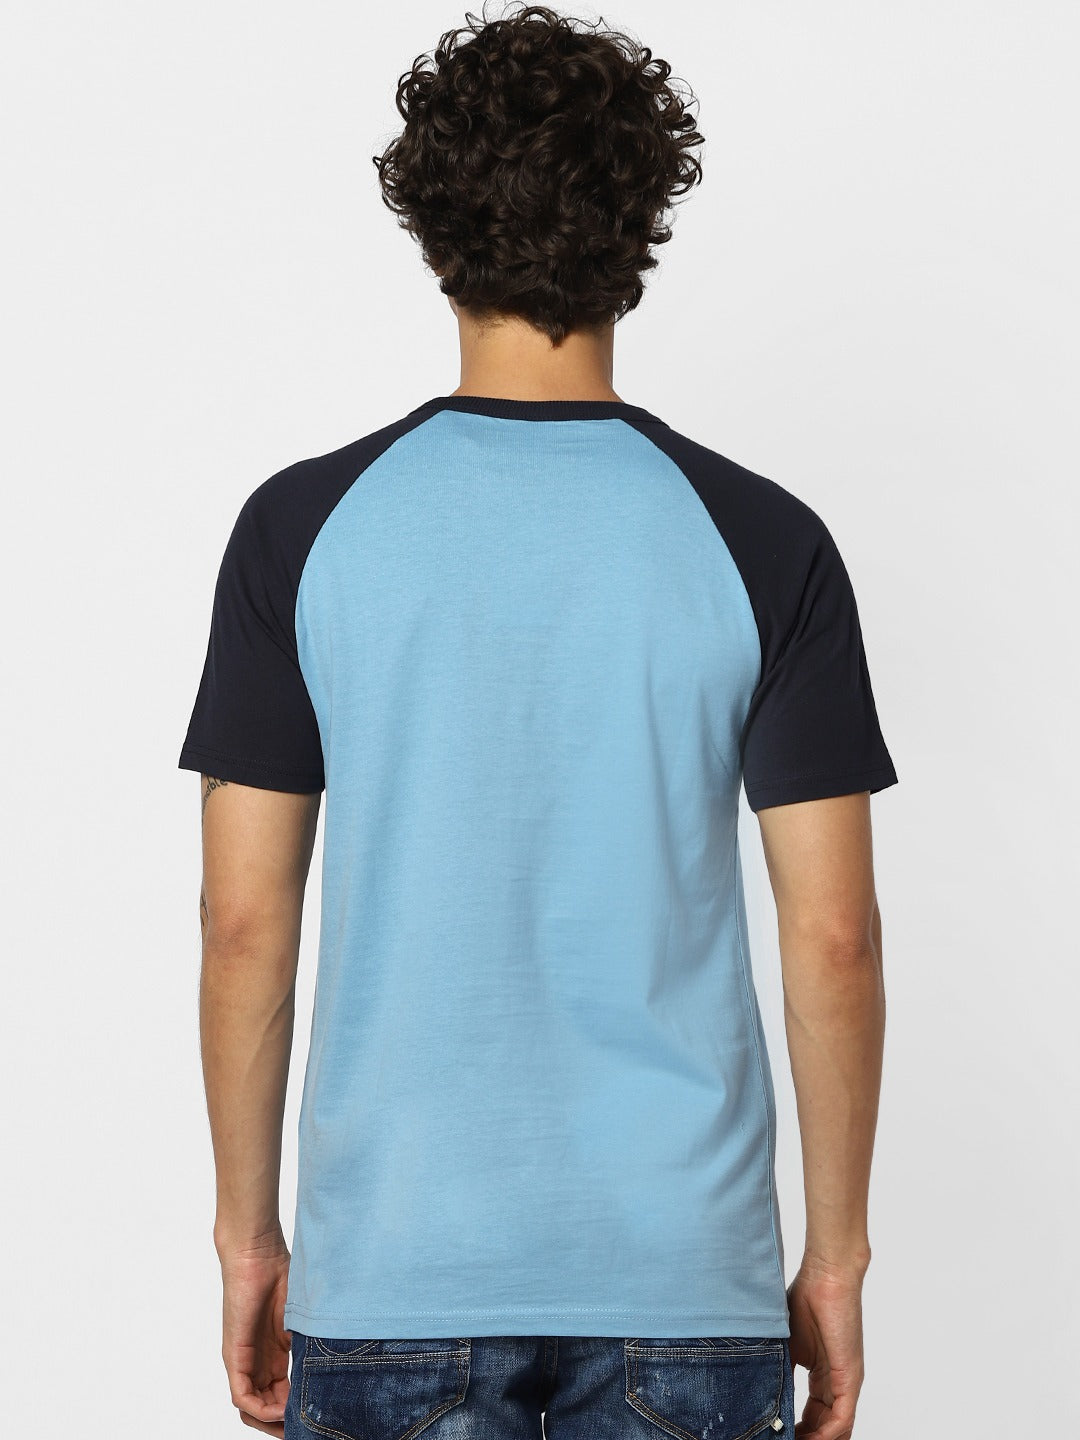 Jack Jones Men Blue Solid Slim Fit Round Neck Sustainable Pure Cotton T-shirt-2114988002